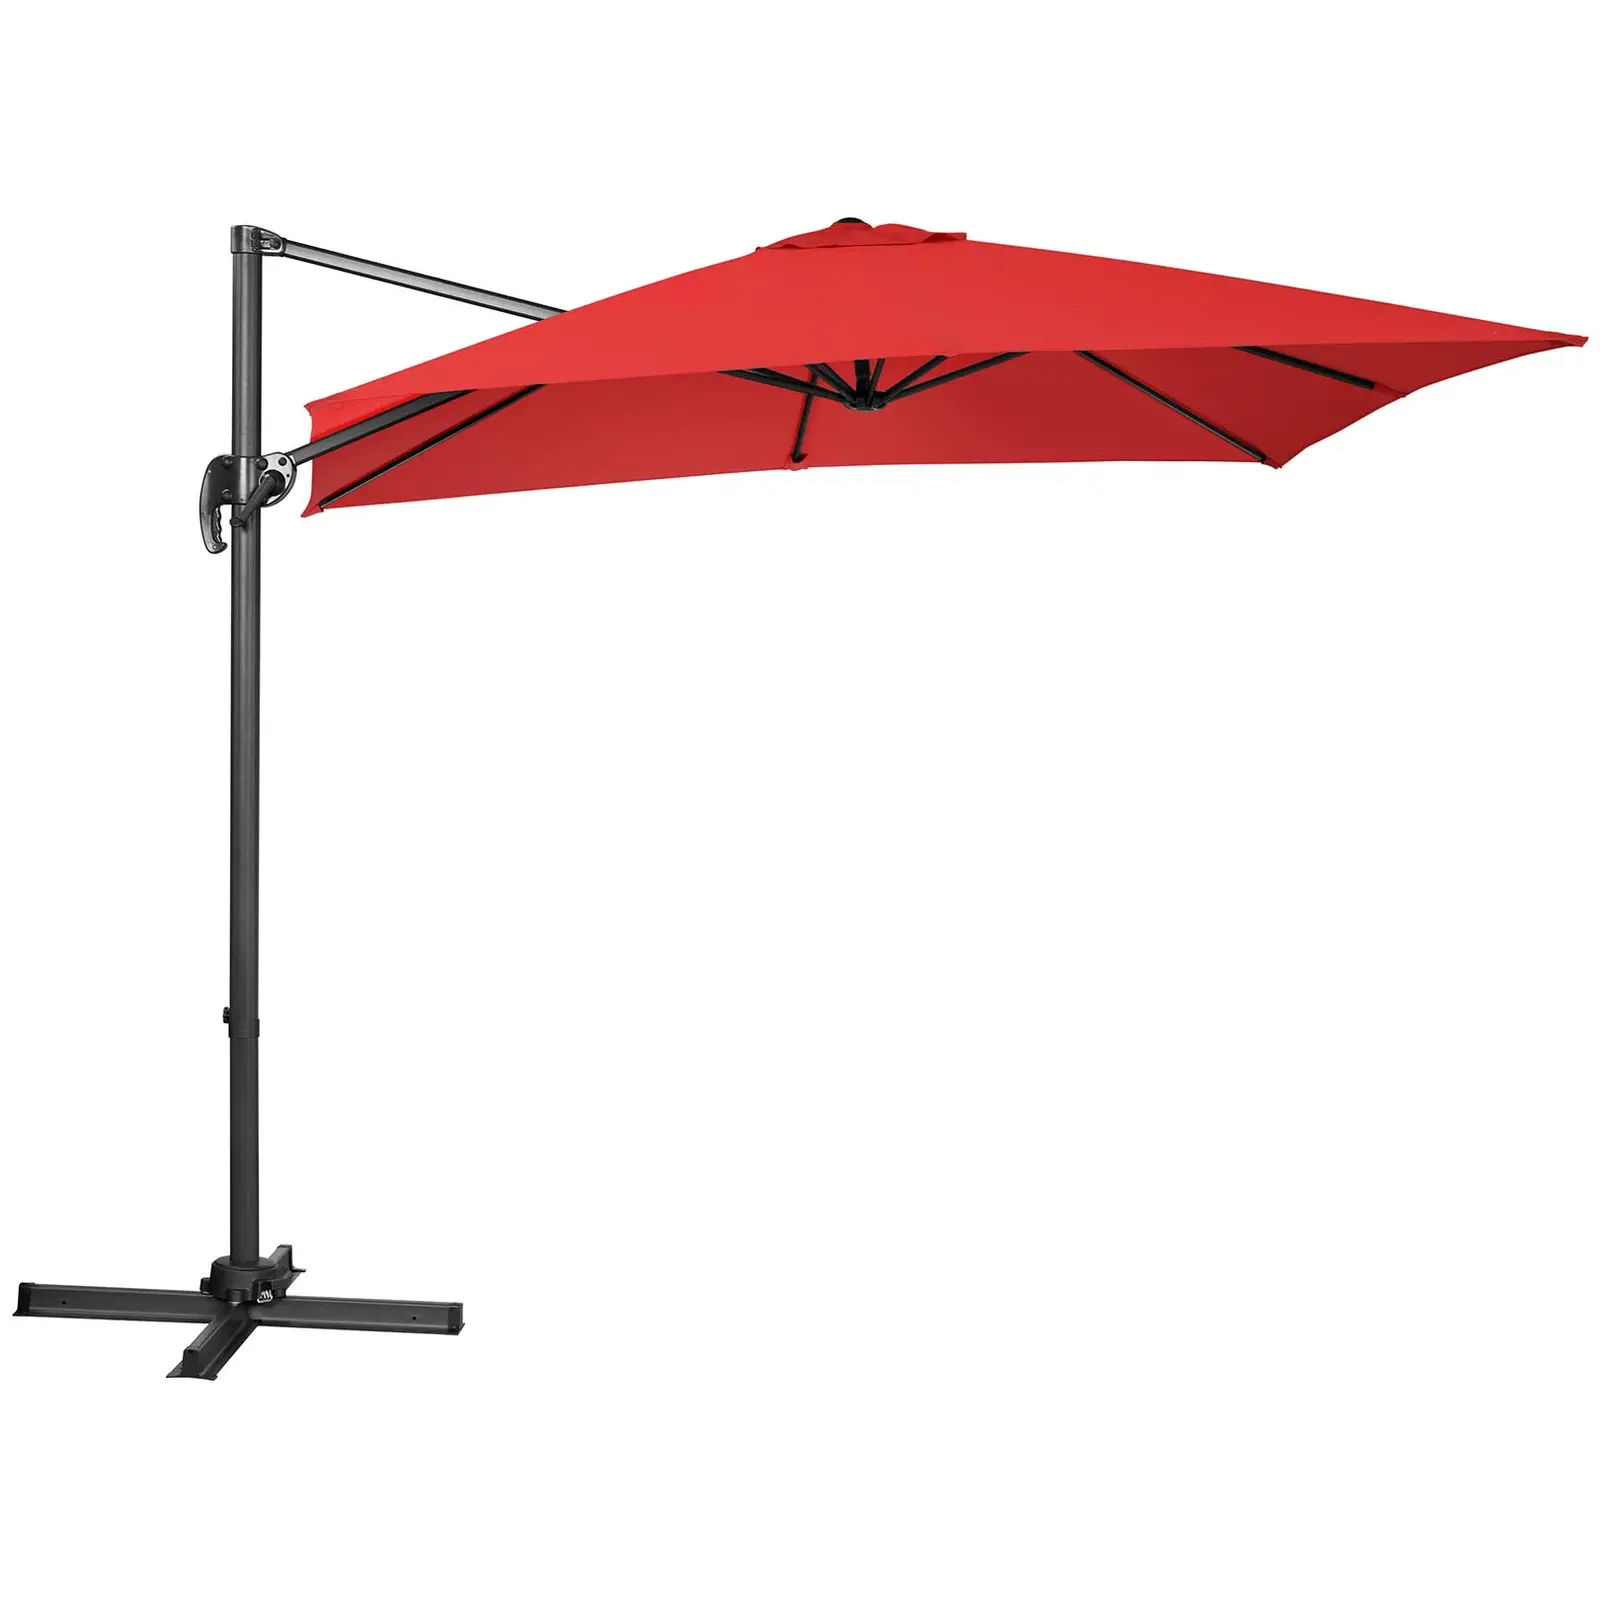 Parasol de jardin - Rouge - Carré - 250 x 250 cm - Pivotant